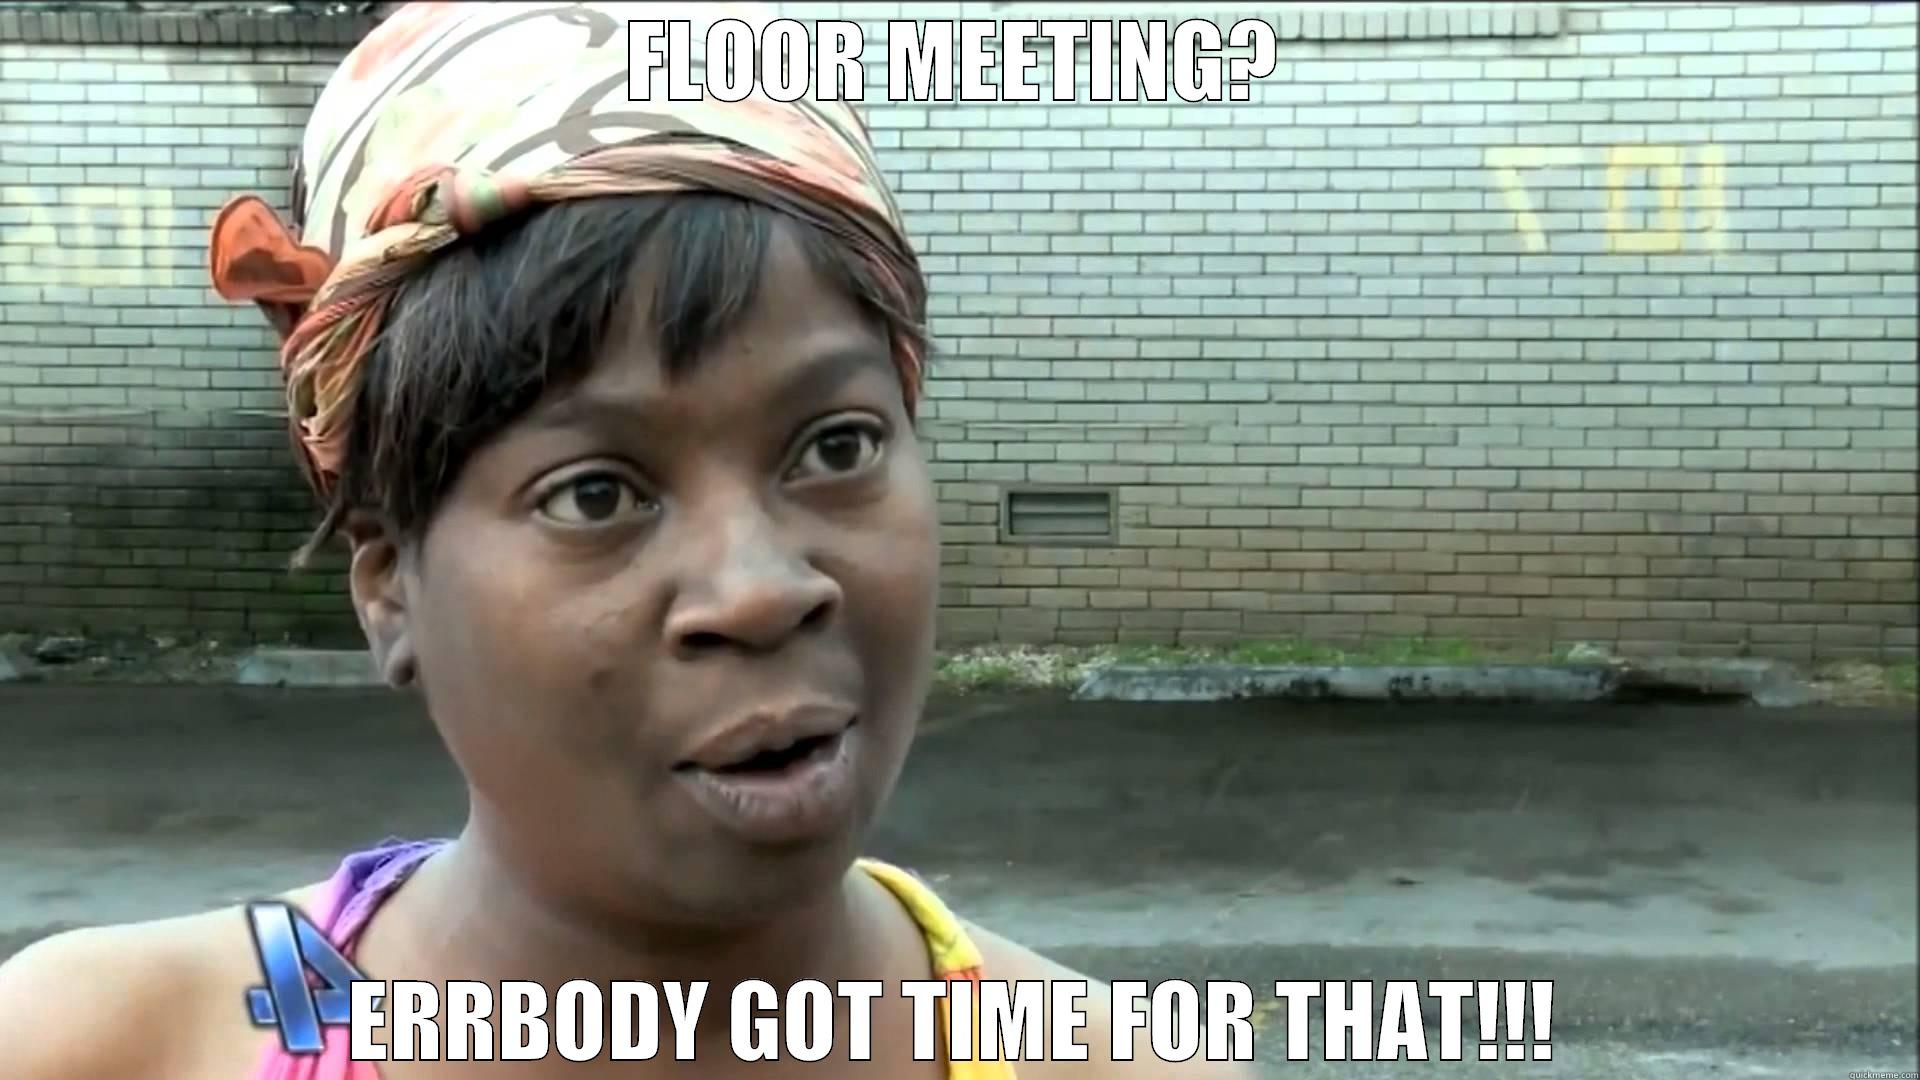 floor meeting - FLOOR MEETING? ERRBODY GOT TIME FOR THAT!!! Misc